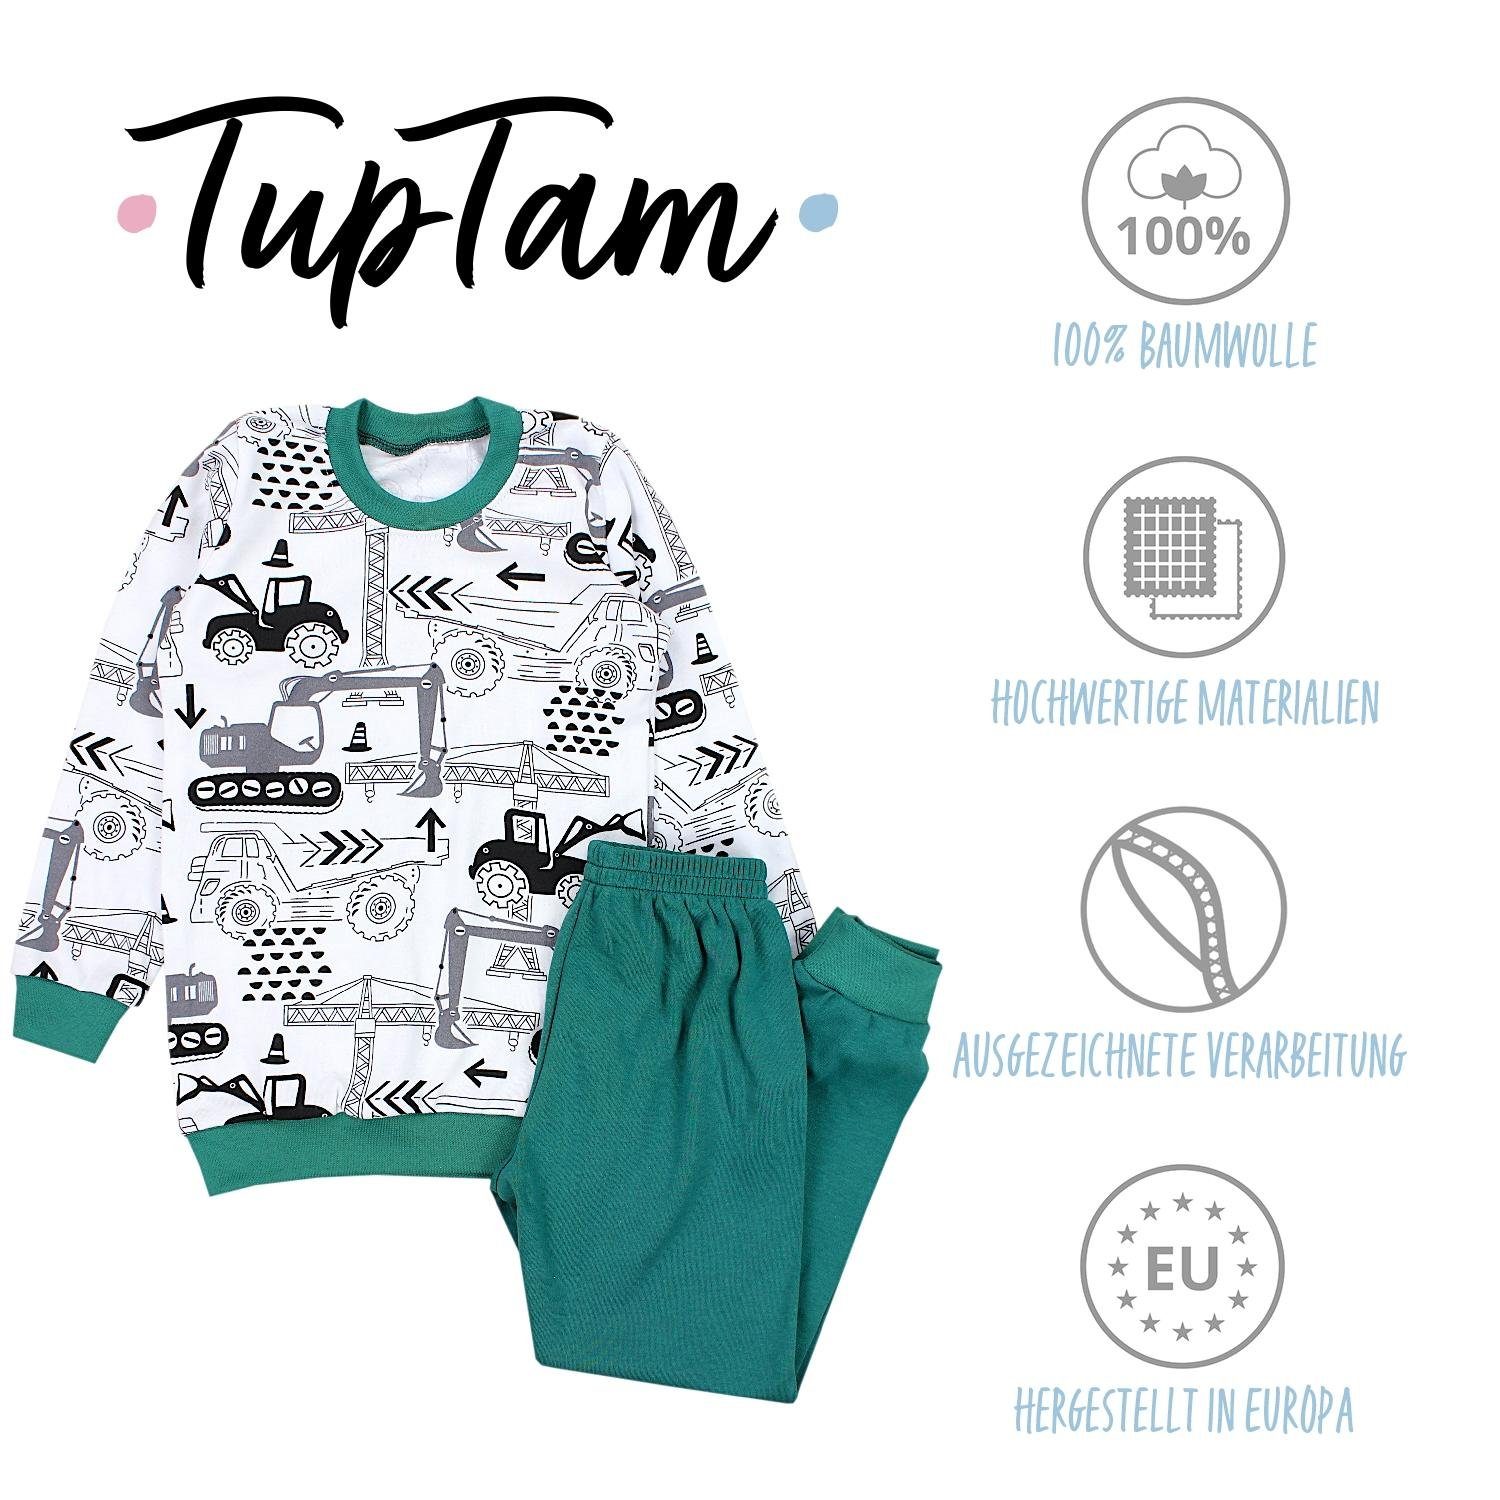 2-teilig Langarm / Grün Jungen Schlafanzug Kinder Schlafanzug Nachtwäsche Pyjama Bagger Set TupTam